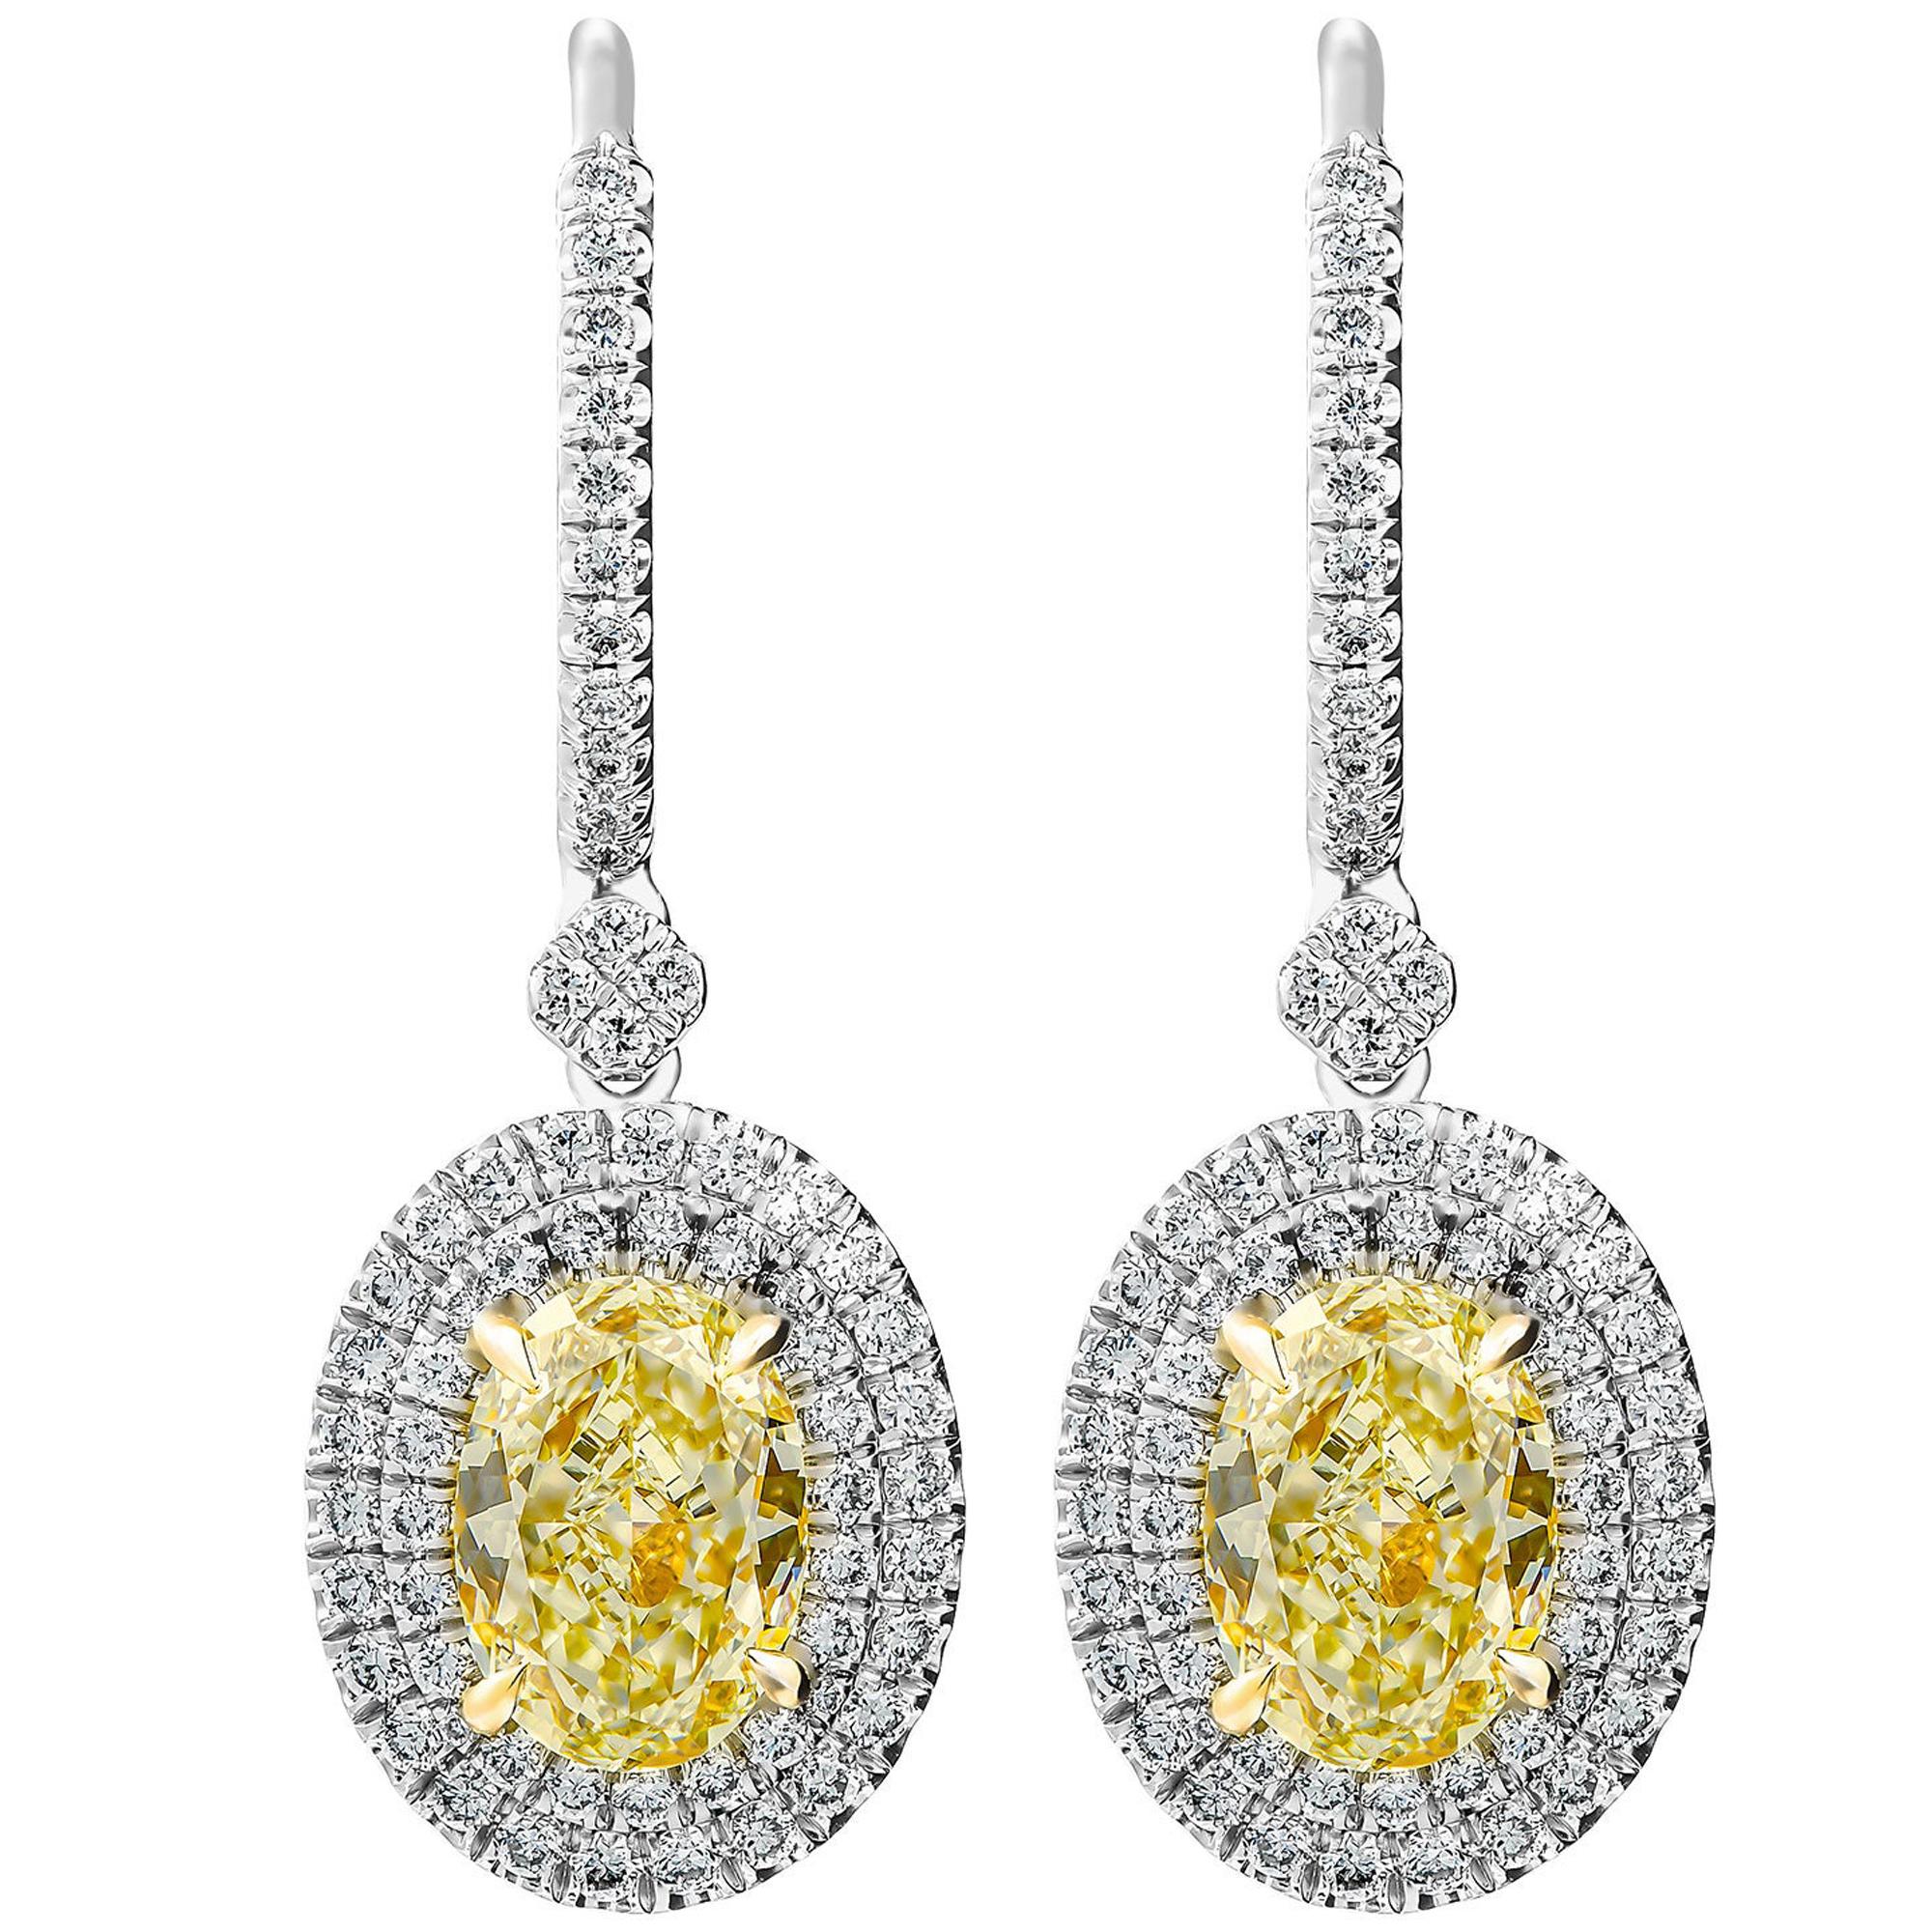 Yellow Oval Diamond Earrings with Double Halo